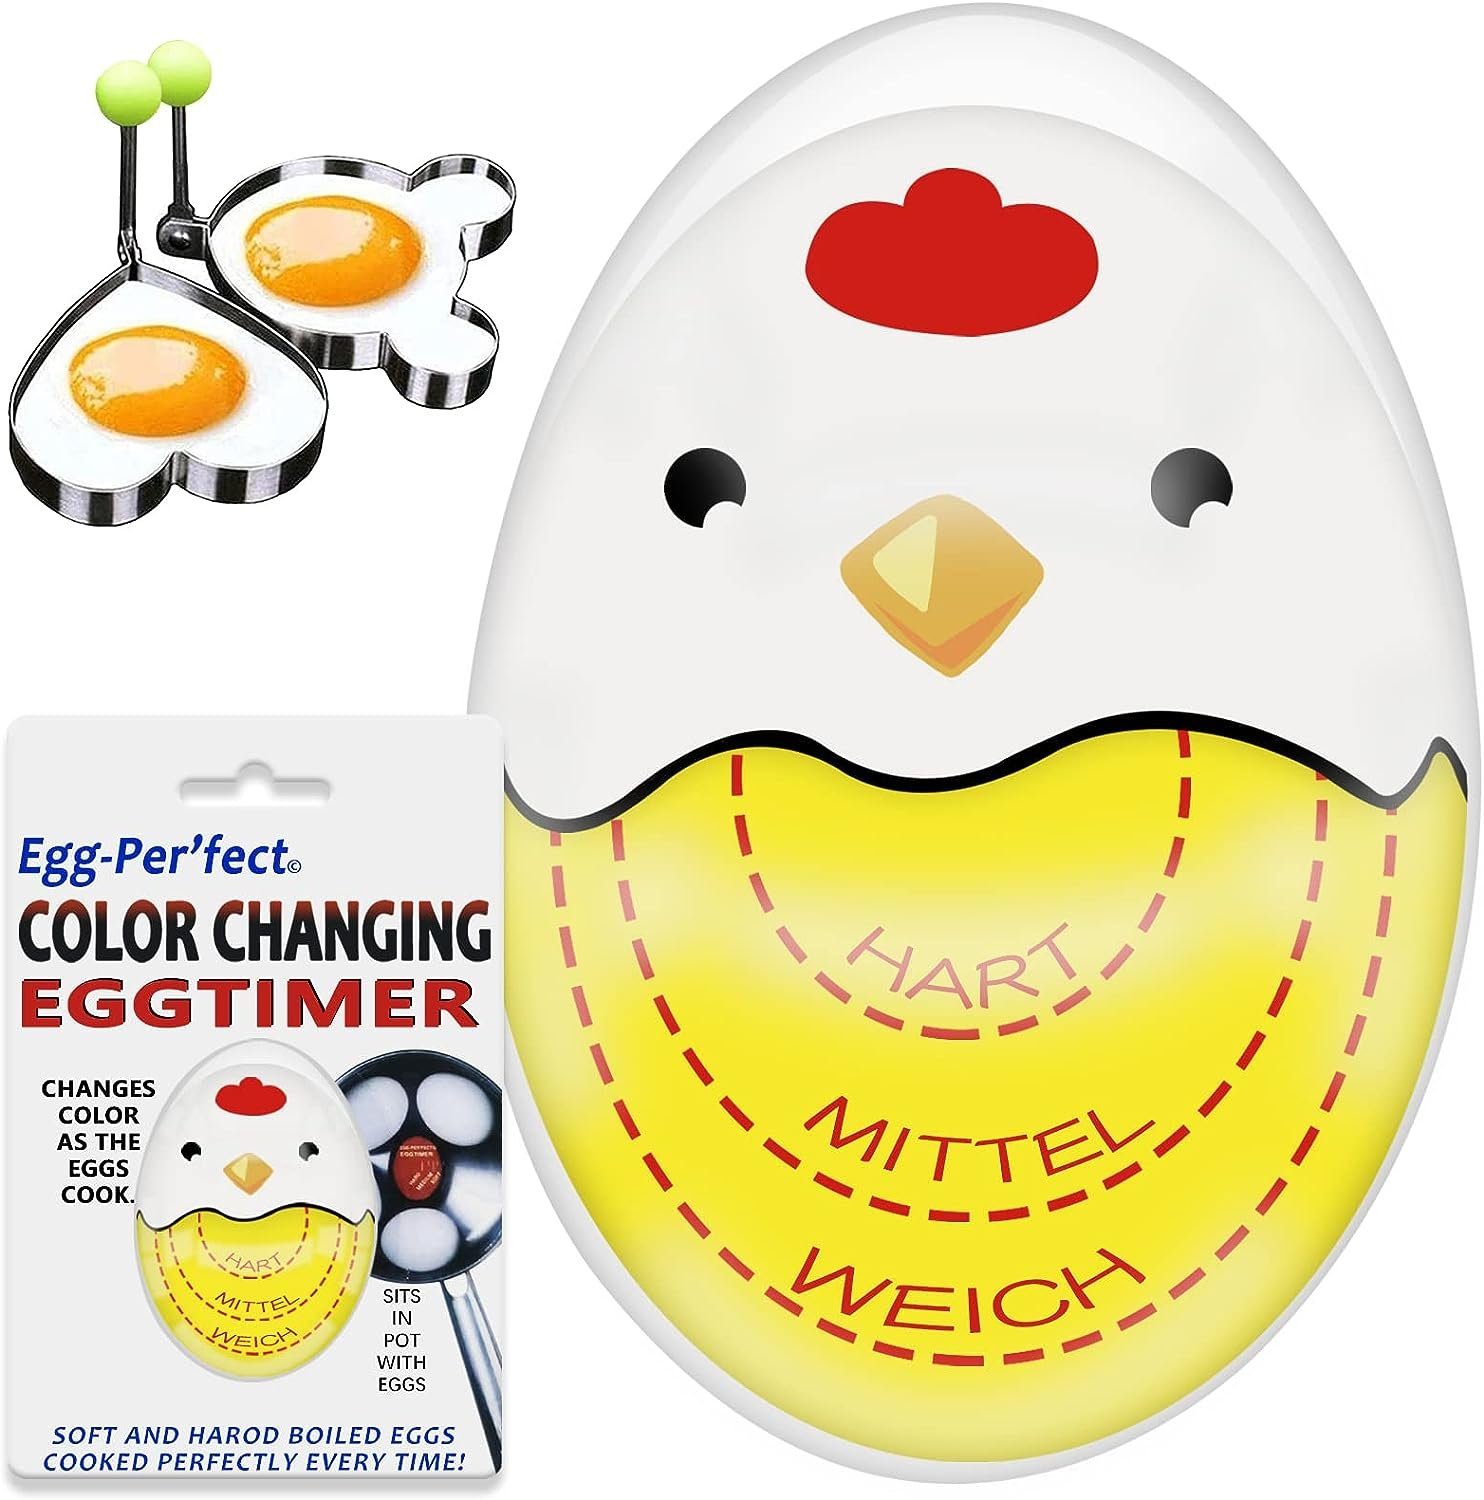 autolock Eieruhr Eieruhr,Egg Timer lustiger Eierkocher,Timer für gekochte Eier, mit Farbwechsel, Anzeige hart/medium/weich,wiederverwendbar Gelb